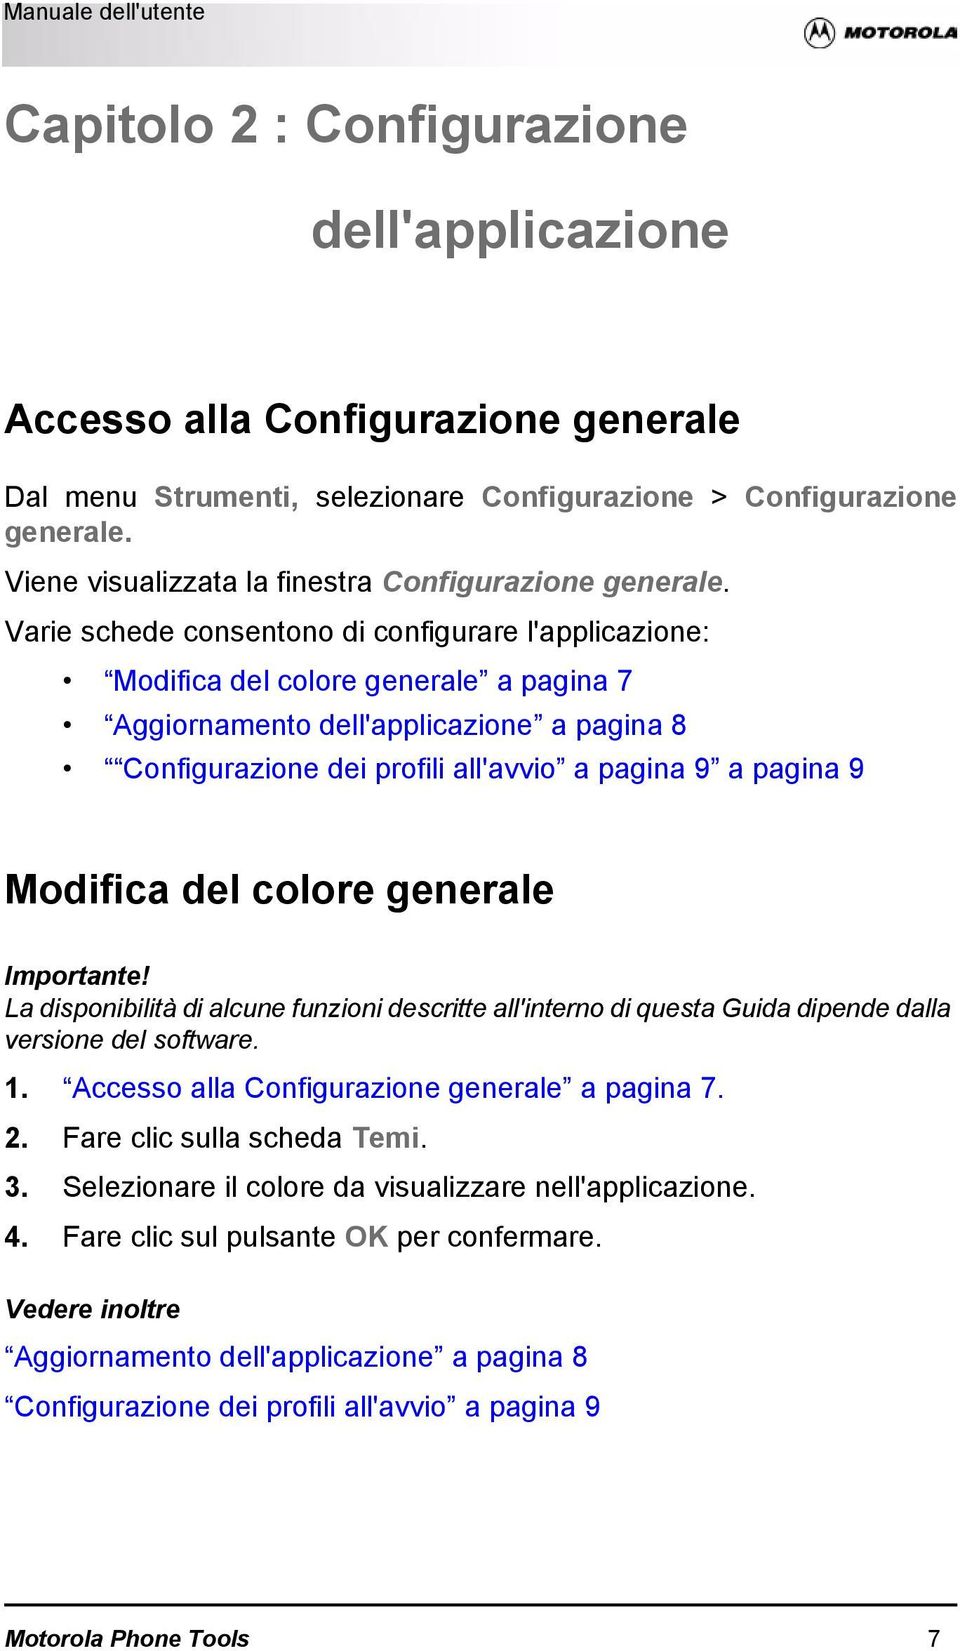 Varie schede consentono di configurare l'applicazione: Modifica del colore generale a pagina 7 Aggiornamento dell'applicazione a pagina 8 Configurazione dei profili all'avvio a pagina 9 a pagina 9